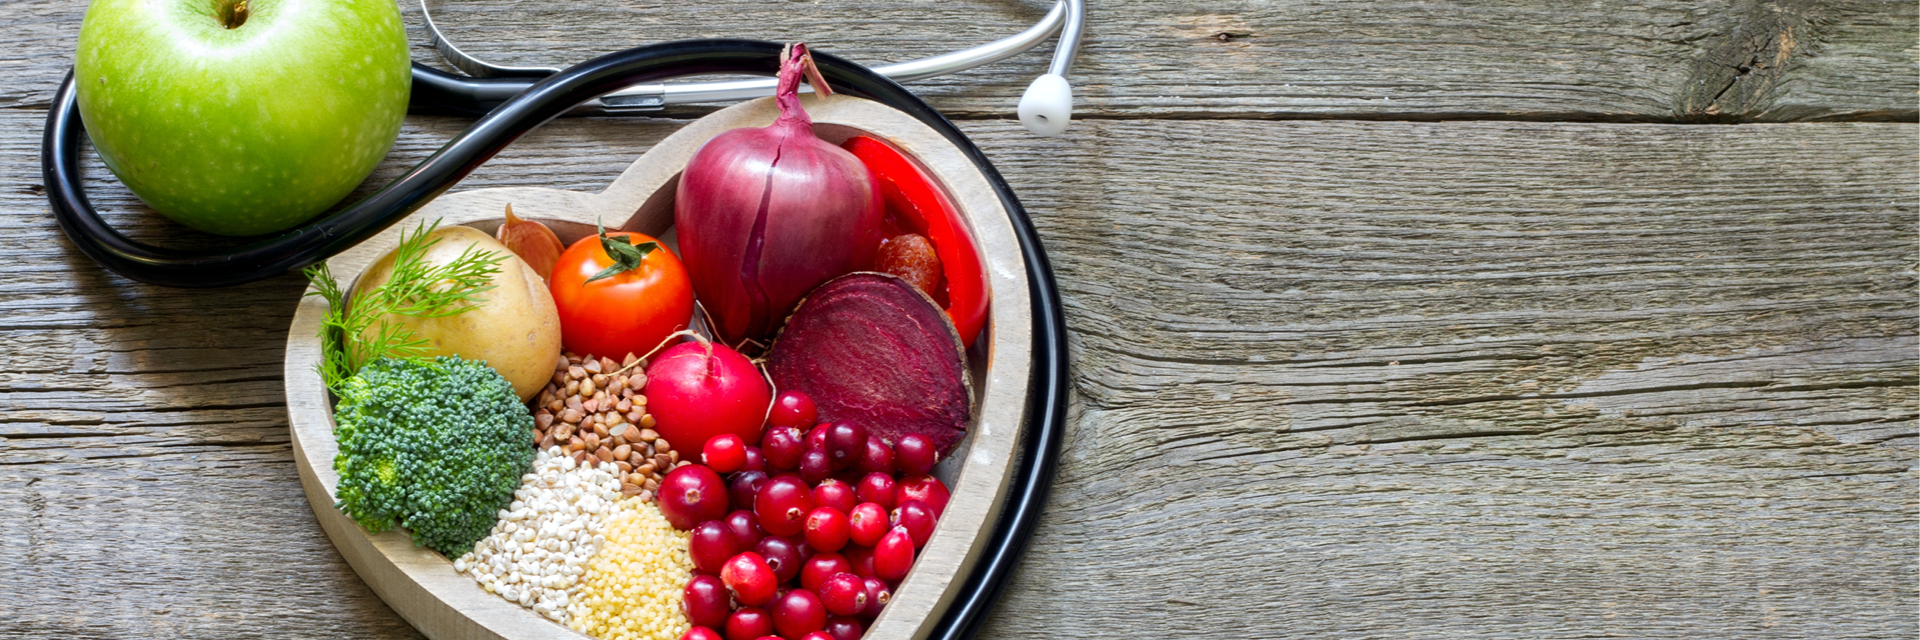 Braucht man eine cholesterinbewusste Ernährung oder eine cholesterinarme Ernährung?